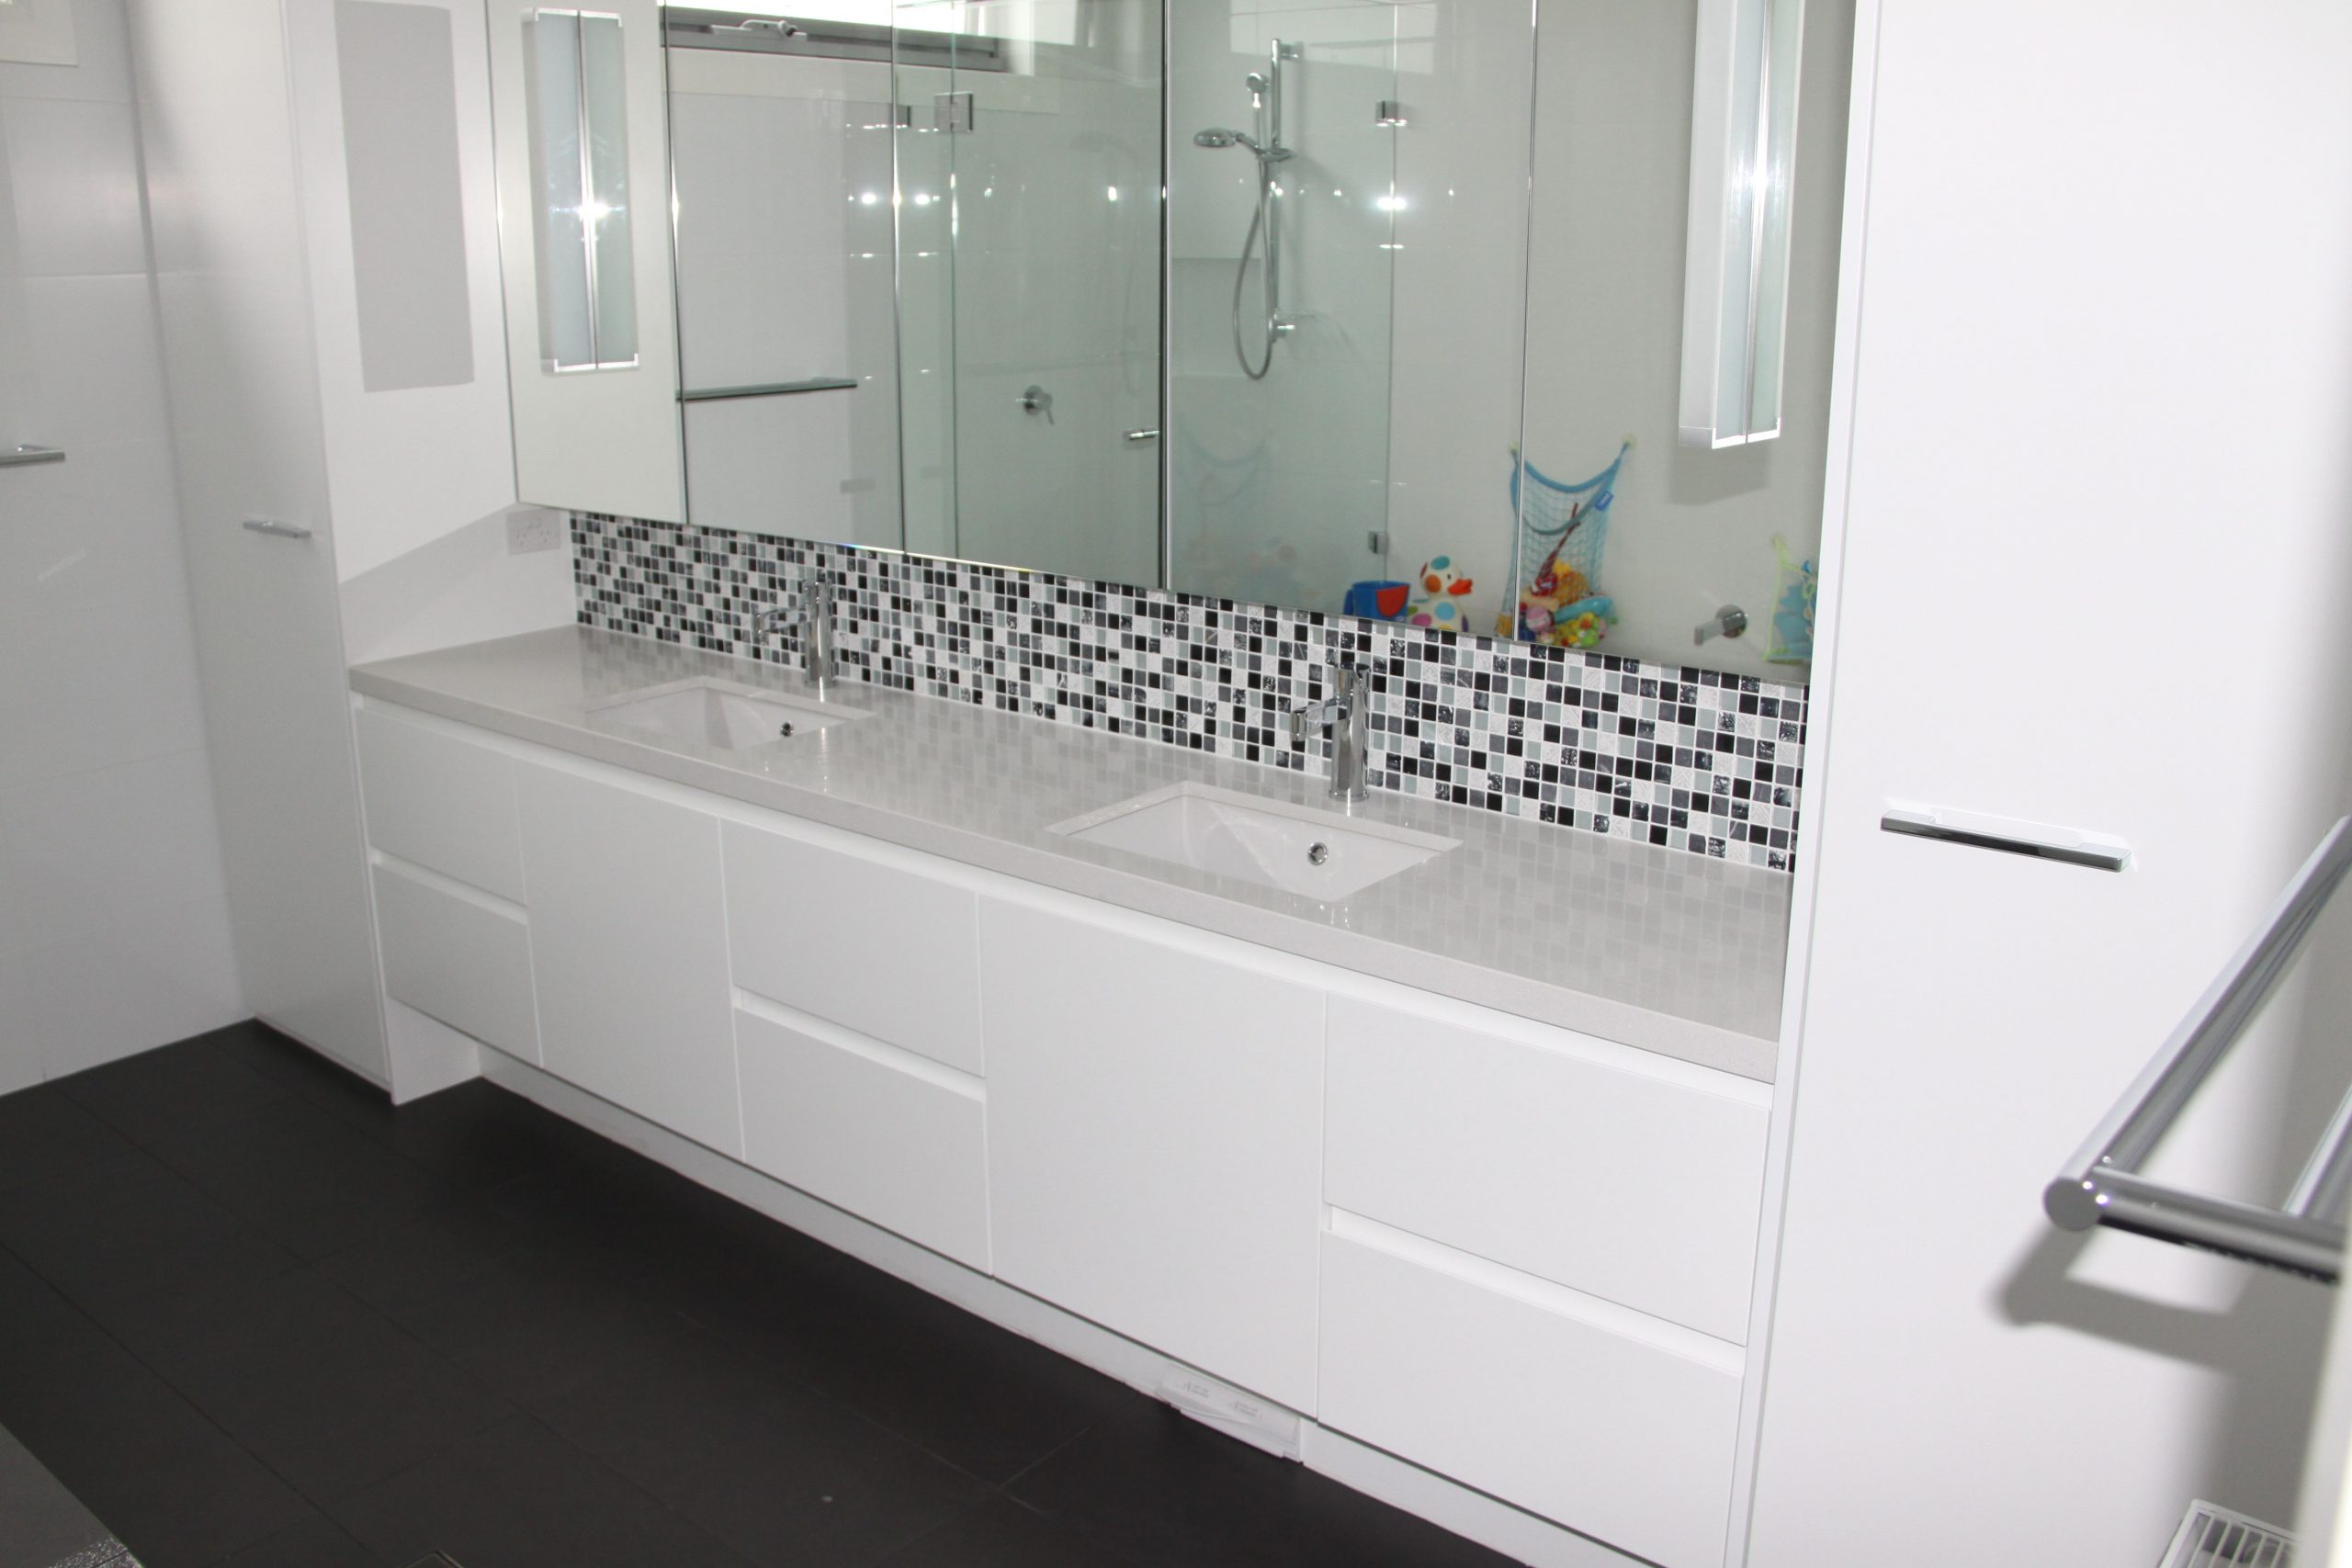 Sleek modern bathroom Vanity